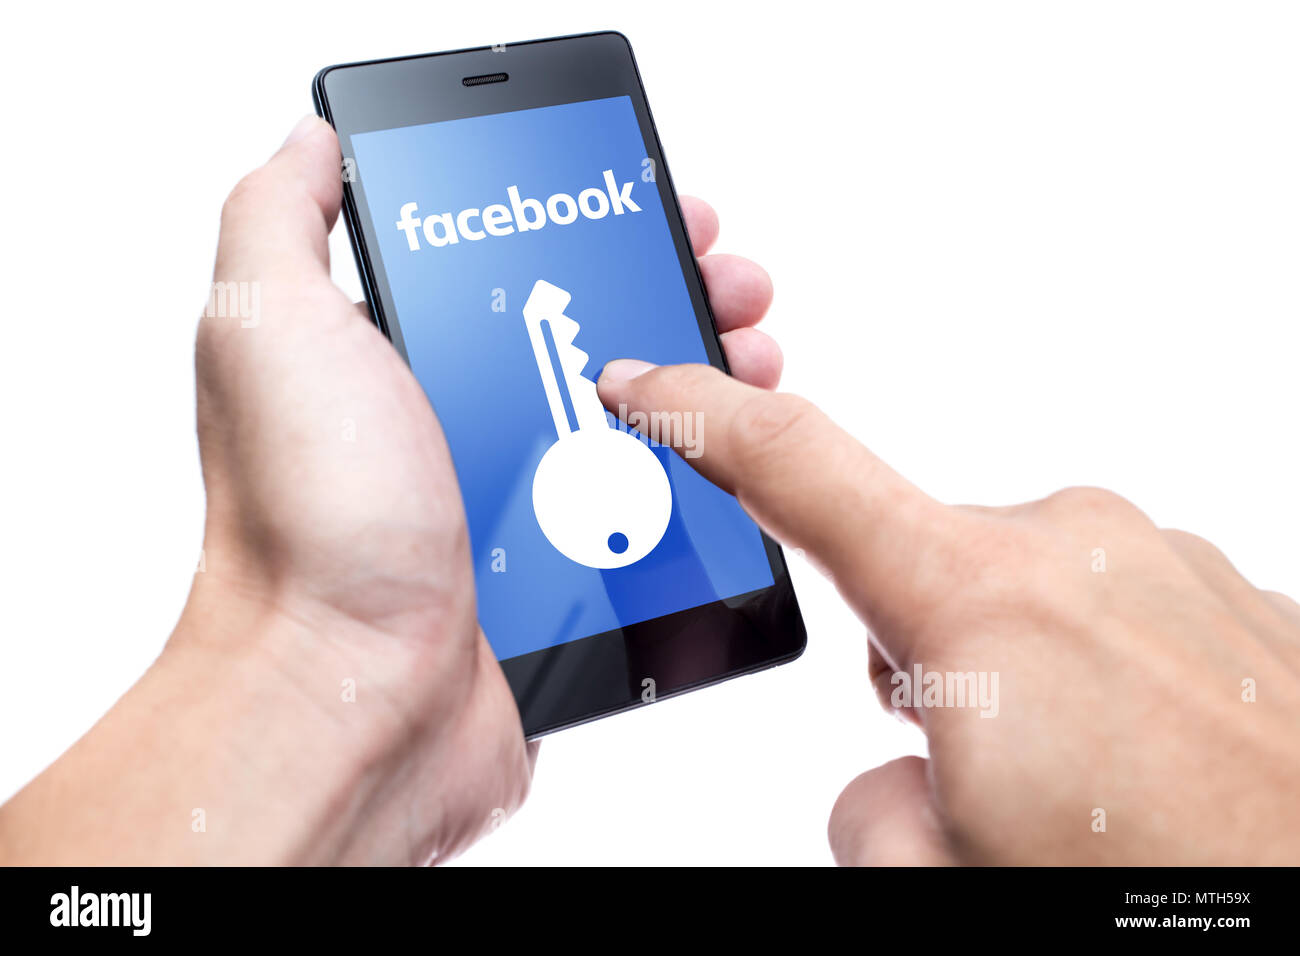 Les gens s'inquiètent des paramètres de confidentialité Facebook News après une fuite de renseignements personnels Rapport de Cambridge Analytica question. Bangkok, Thaïlande 30 avril. Banque D'Images